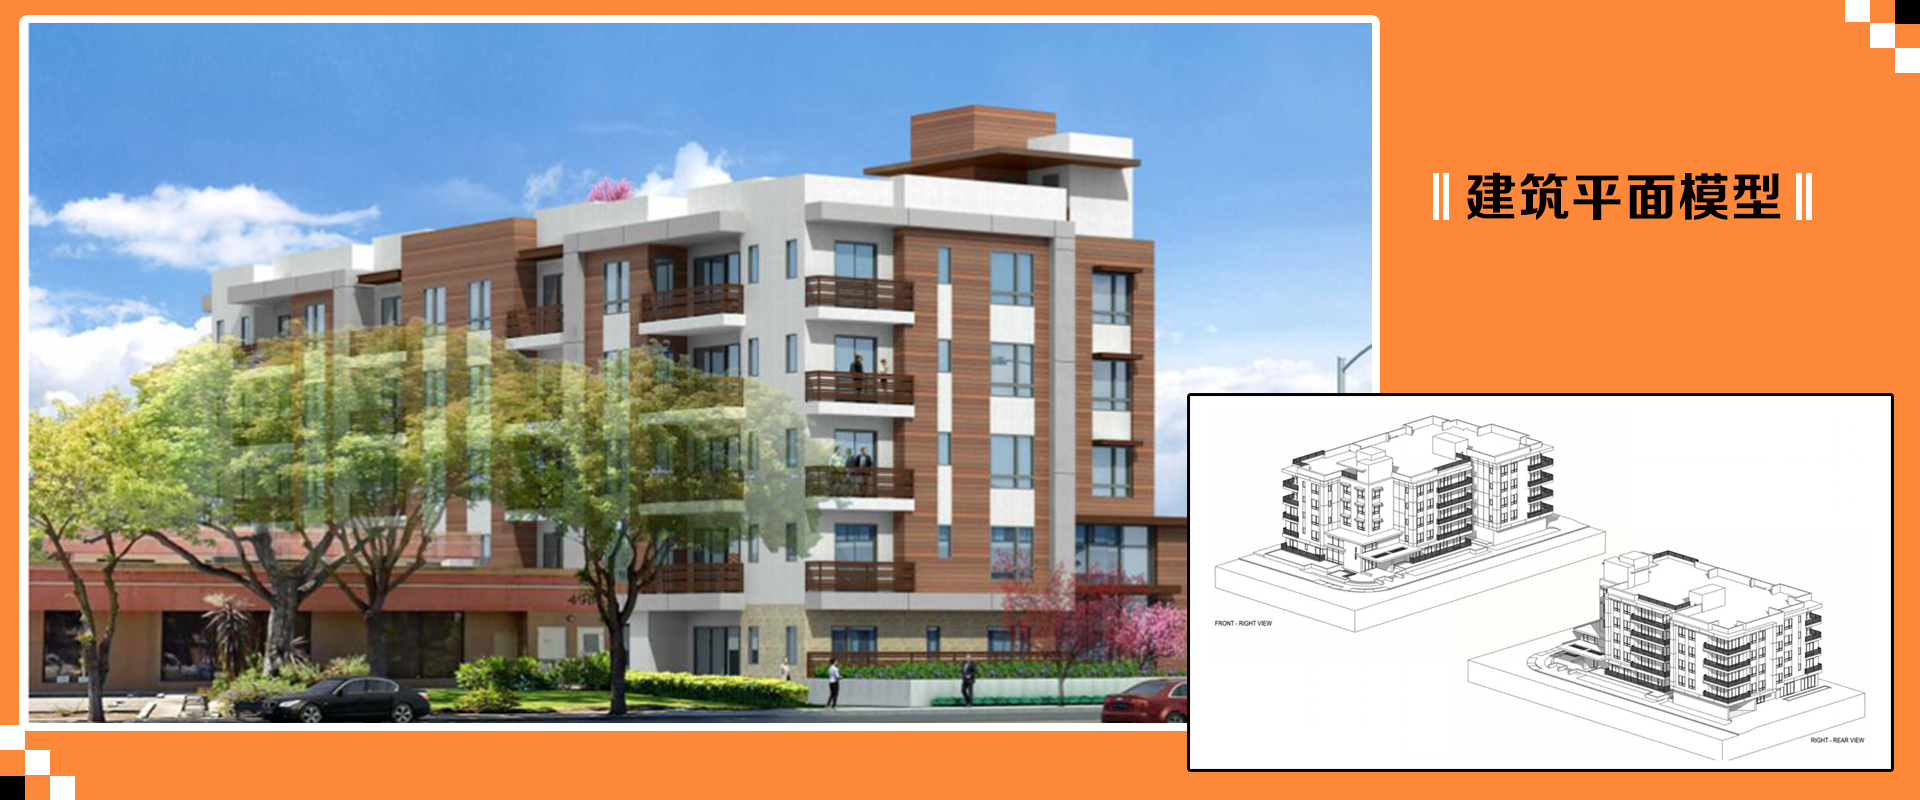 洛斯阿尔托斯,28单位高级公寓开发案 建筑平面模型